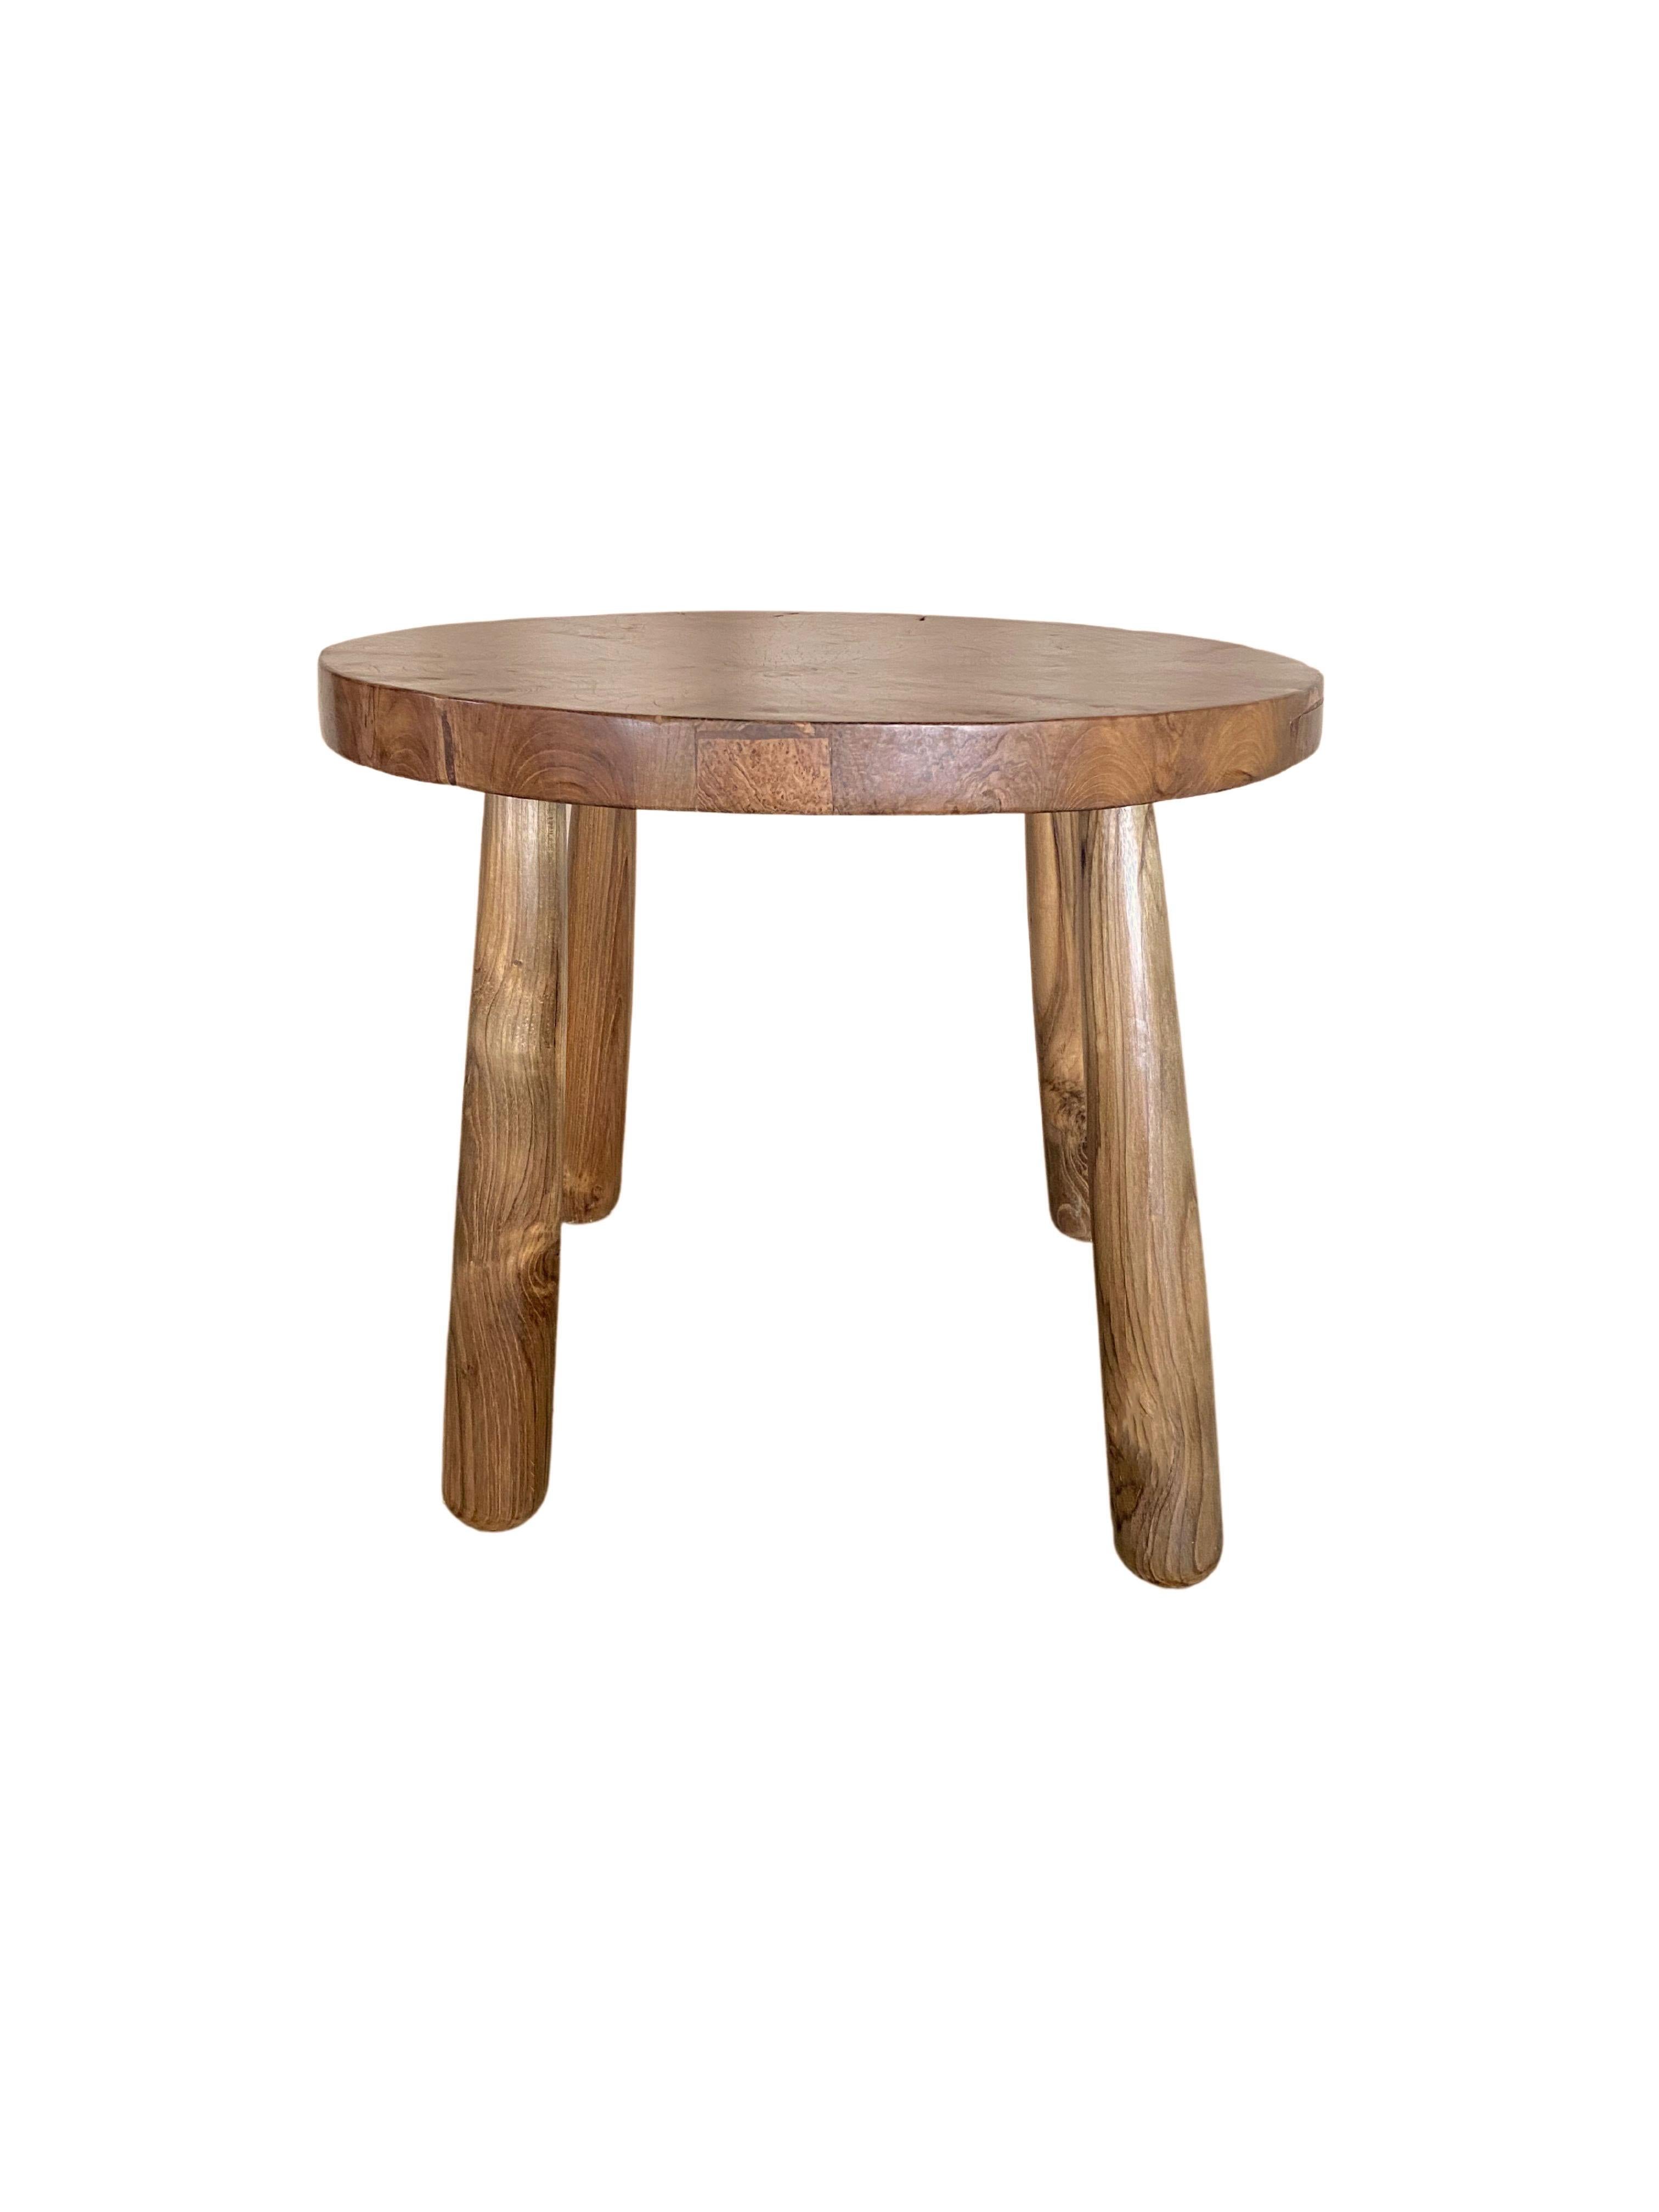 Set of Sculptural Teak Burl Wood Side Tables For Sale 3